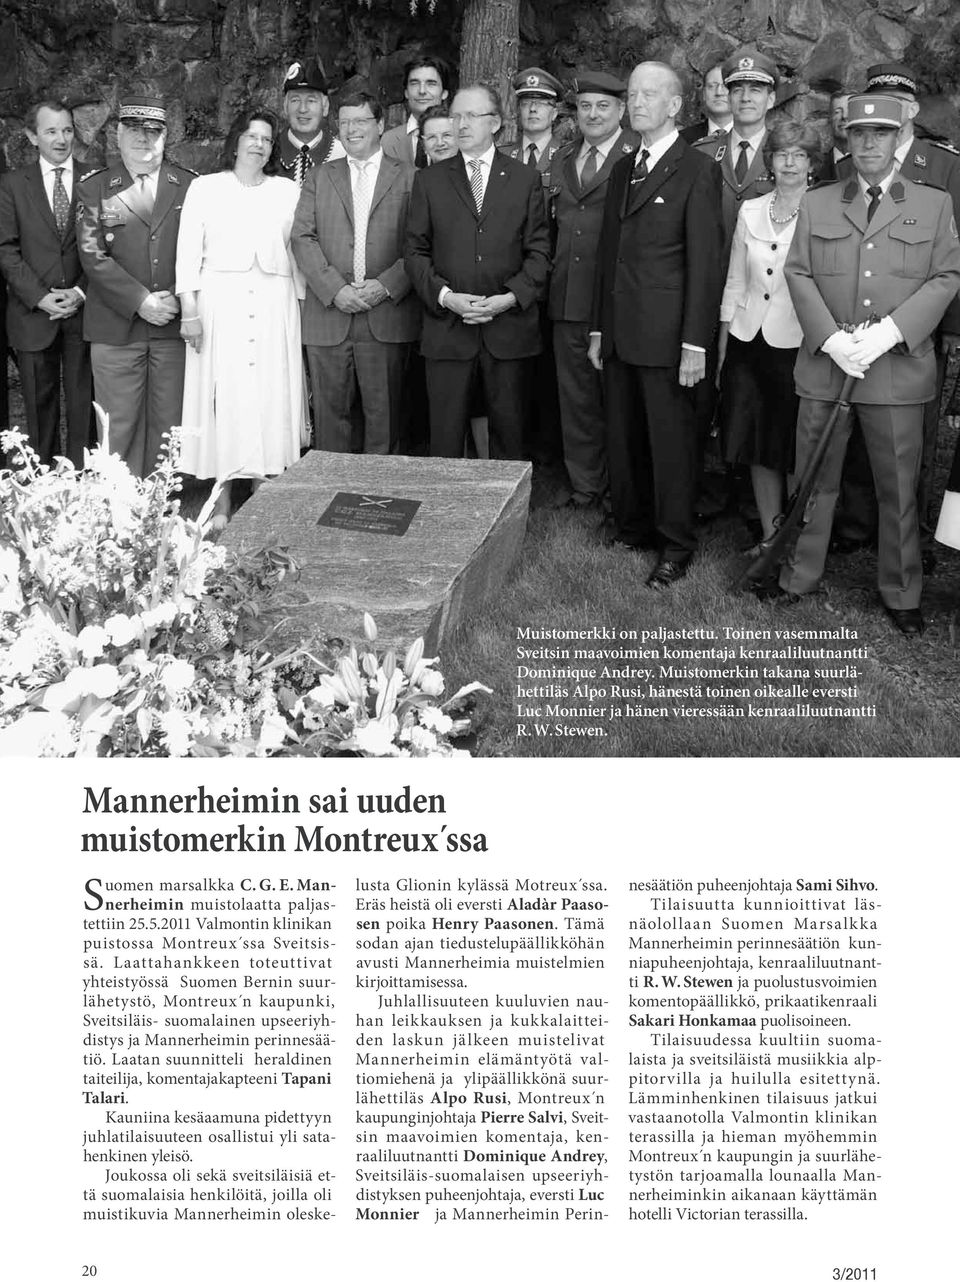 Mannerheimin sai uuden muistomerkin Montreux ssa Suomen marsalkka C. G. E. Mannerheimin muistolaatta paljastettiin 25.5.2011 Valmontin klinikan puistossa Montreux ssa Sveitsissä.